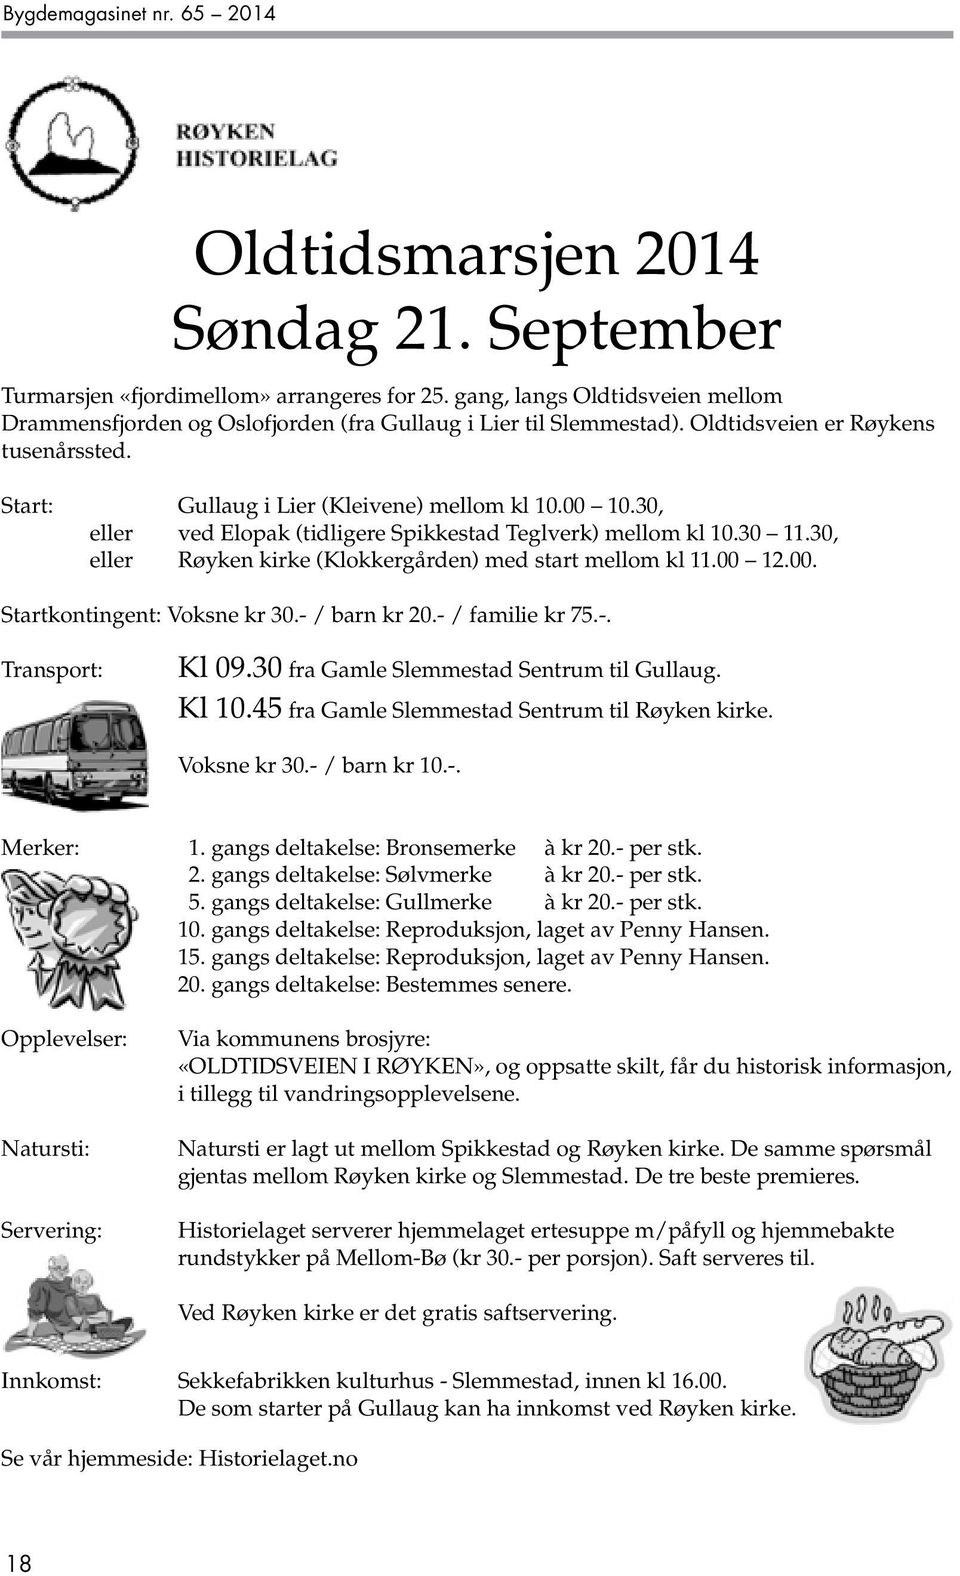 30, eller ved Elopak (tidligere Spikkestad Teglverk) mellom kl 10.30 11.30, eller Røyken kirke (Klokkergården) med start mellom kl 11.00 12.00. Startkontingent: Voksne kr 30.- / barn kr 20.